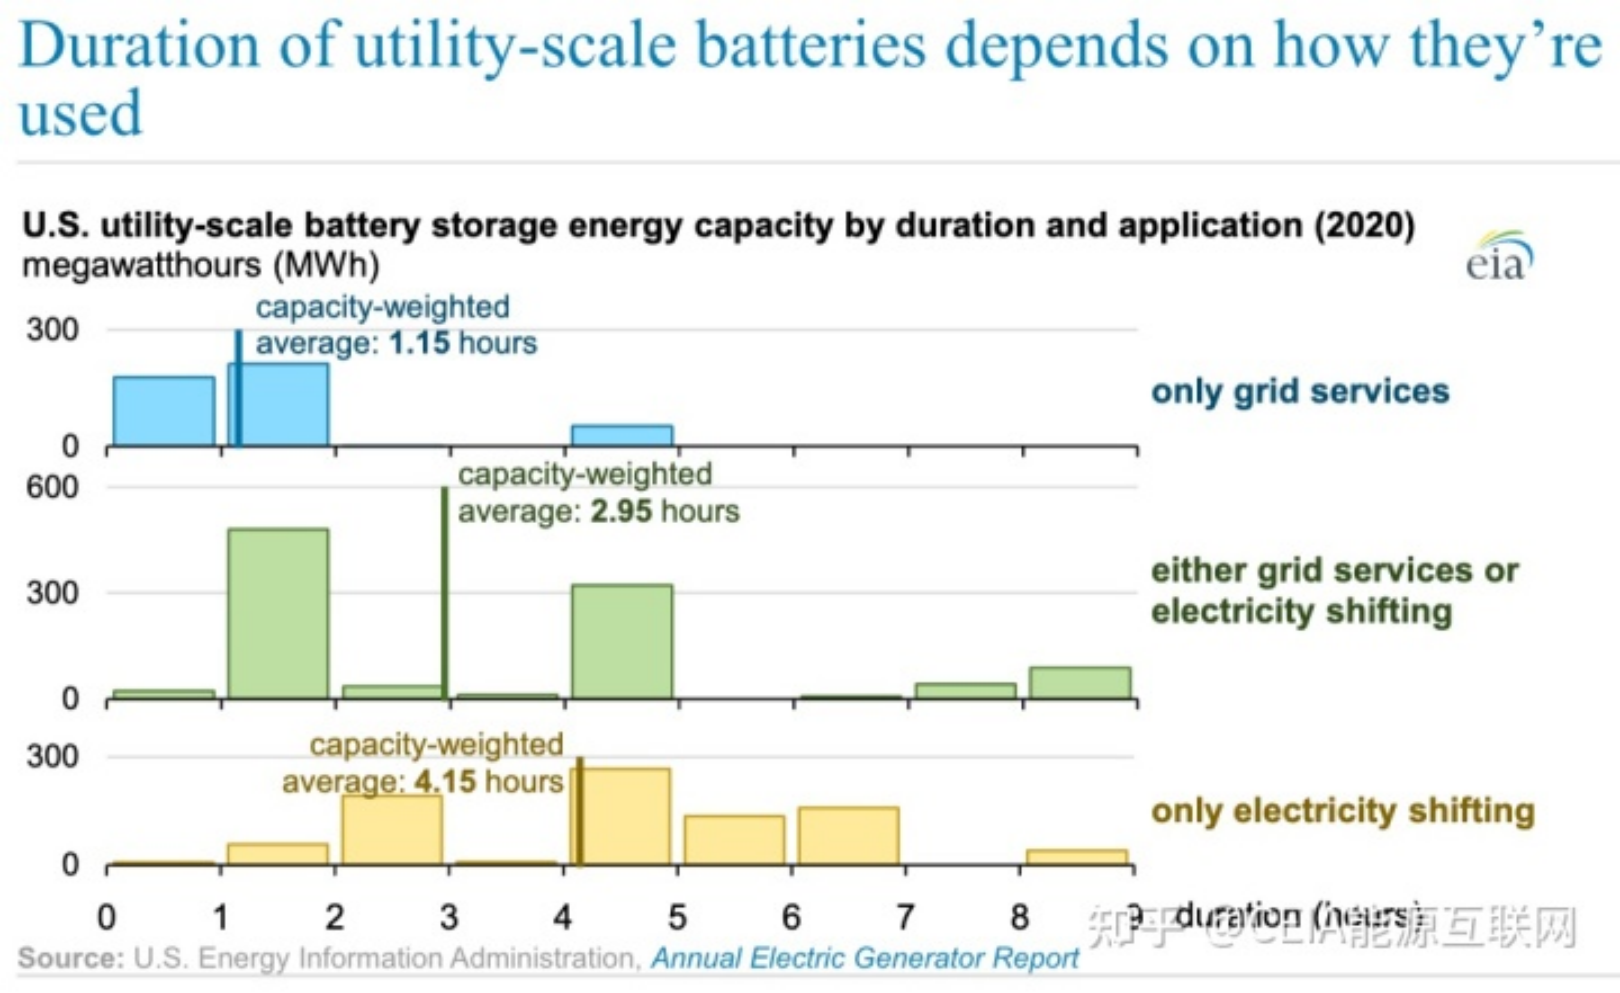 کاربرد باتری های ذخیره انرژی در مقیاس کاربردی در ایالات متحده چیست؟